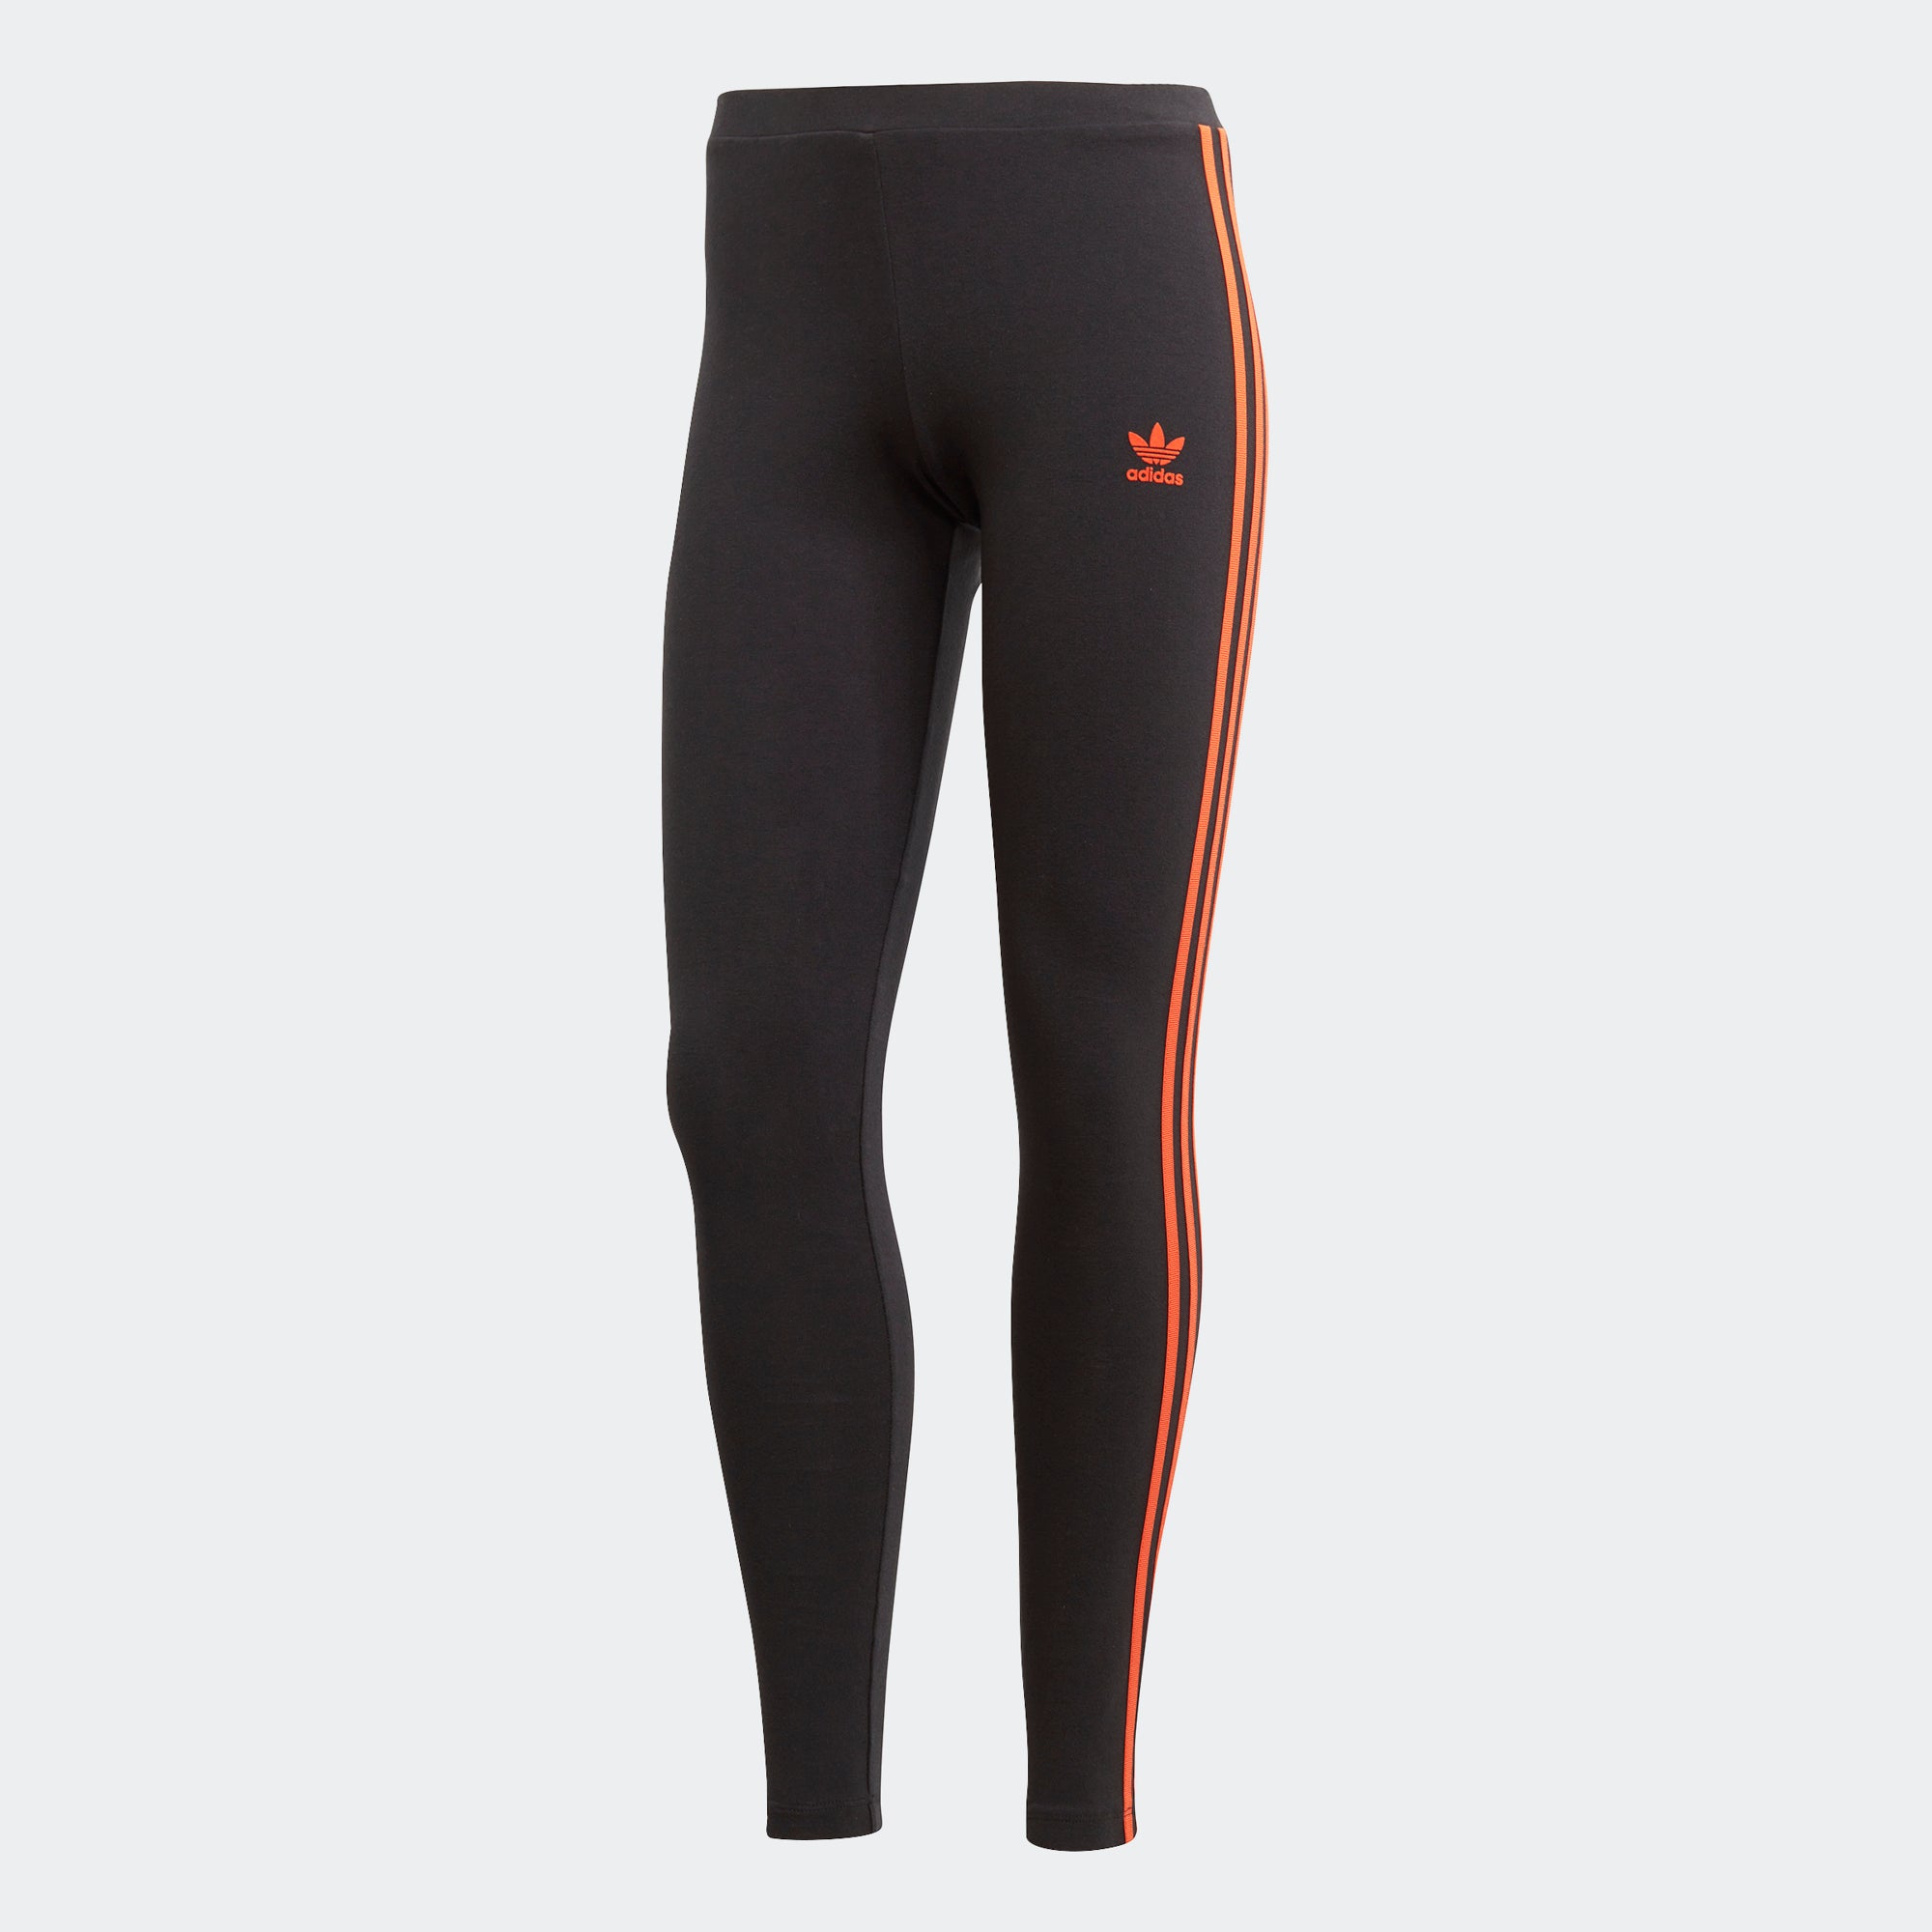 adidas black and orange leggings